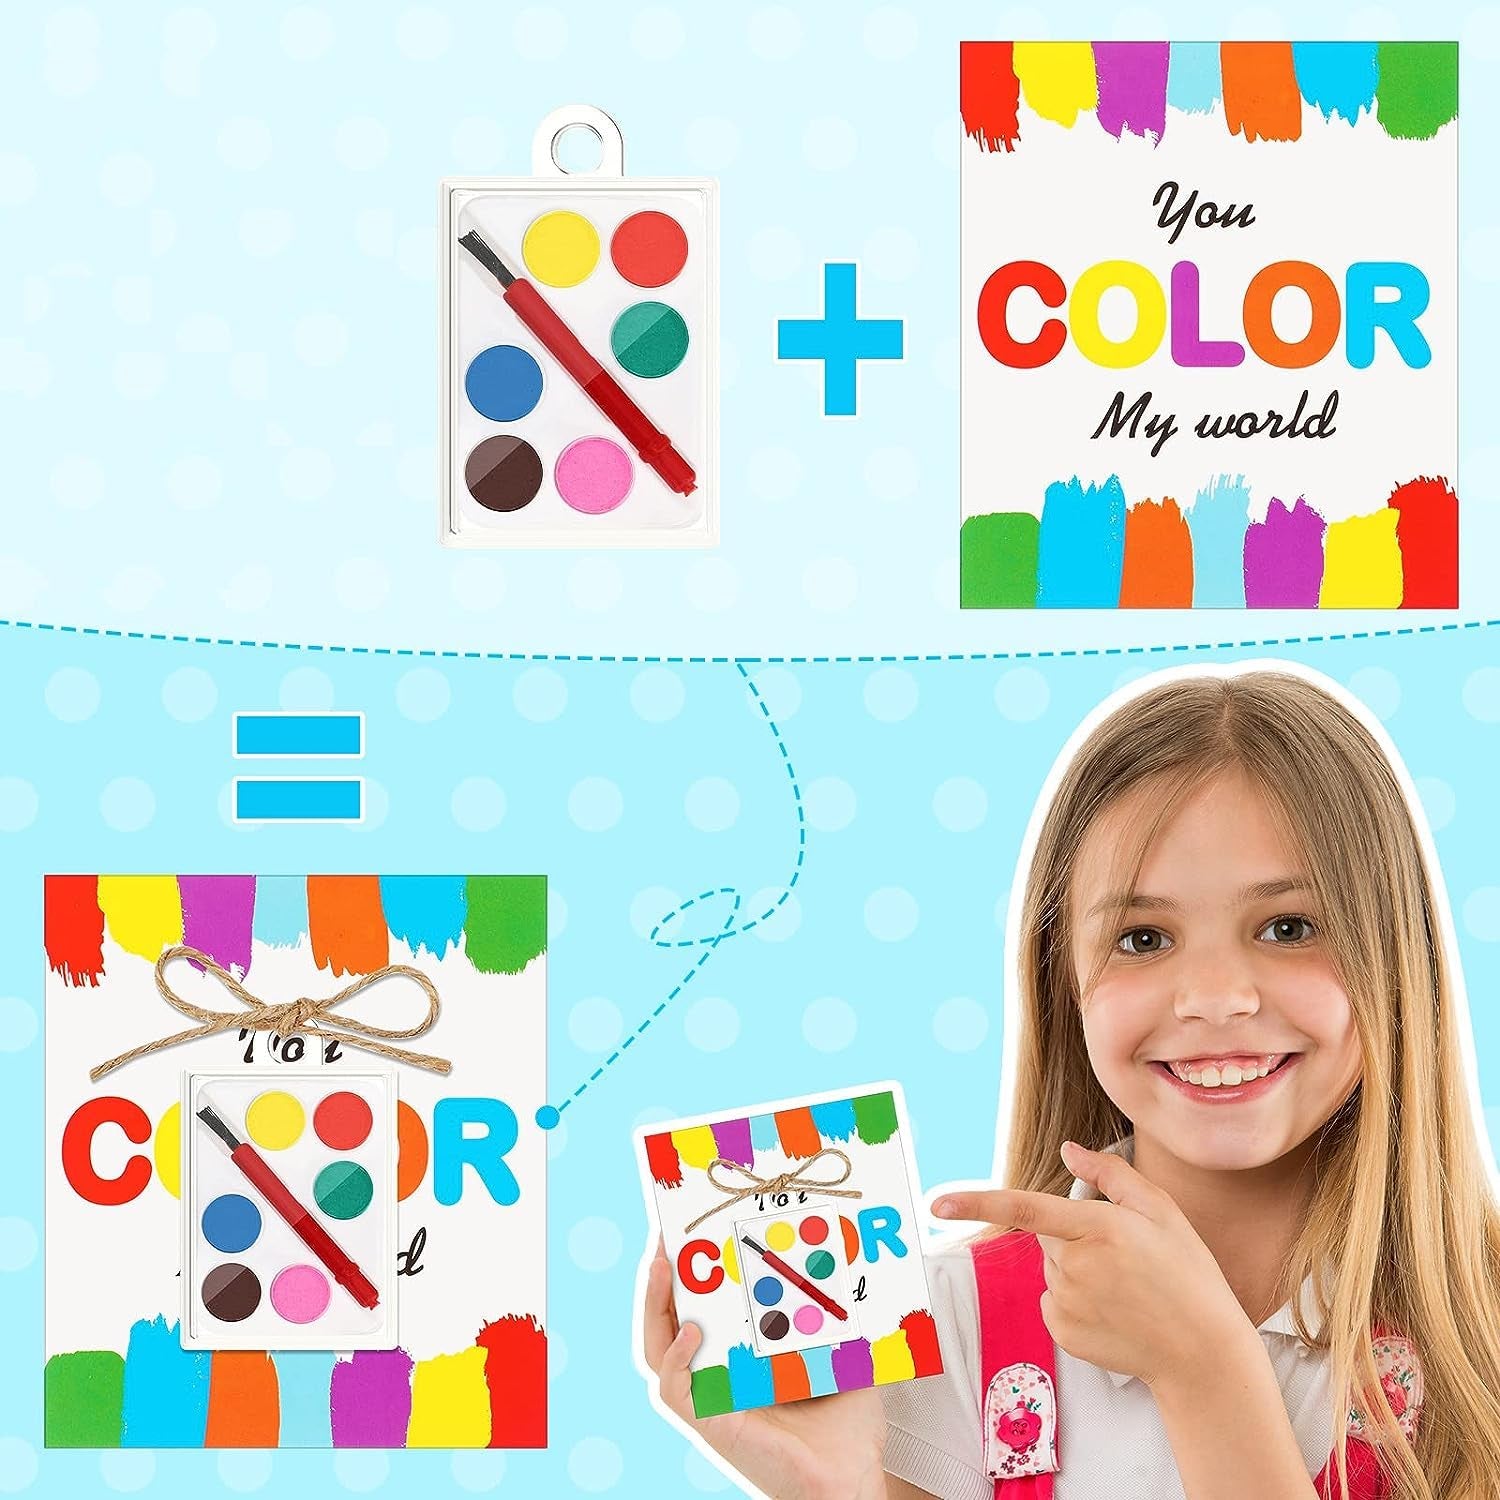 Mini Watercolor Kids Paint Set 